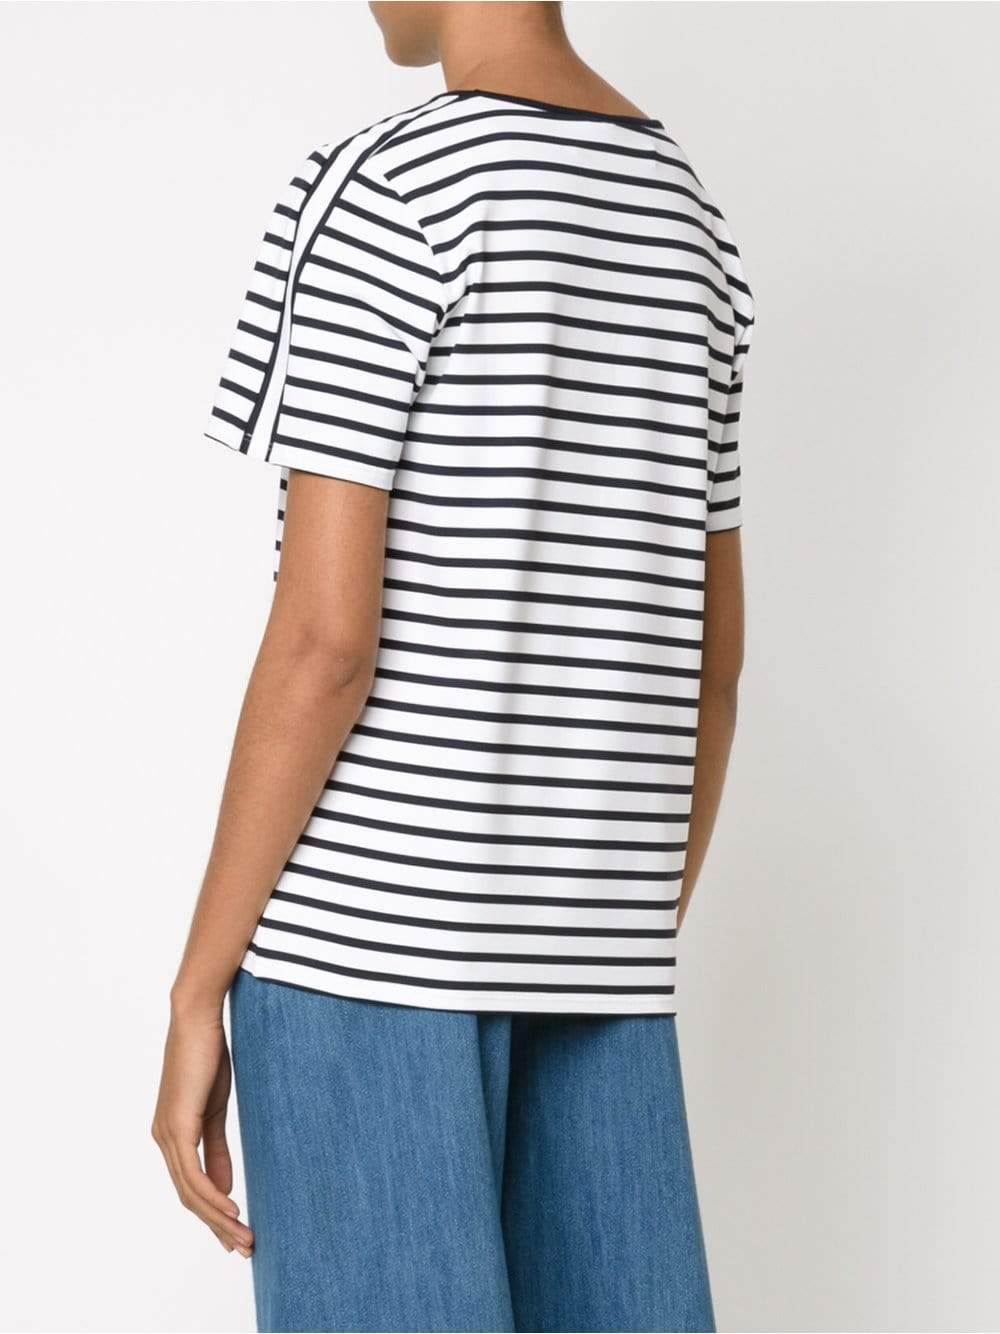 ATEA OCEANIE-Matelot Stripe T-Shirt-